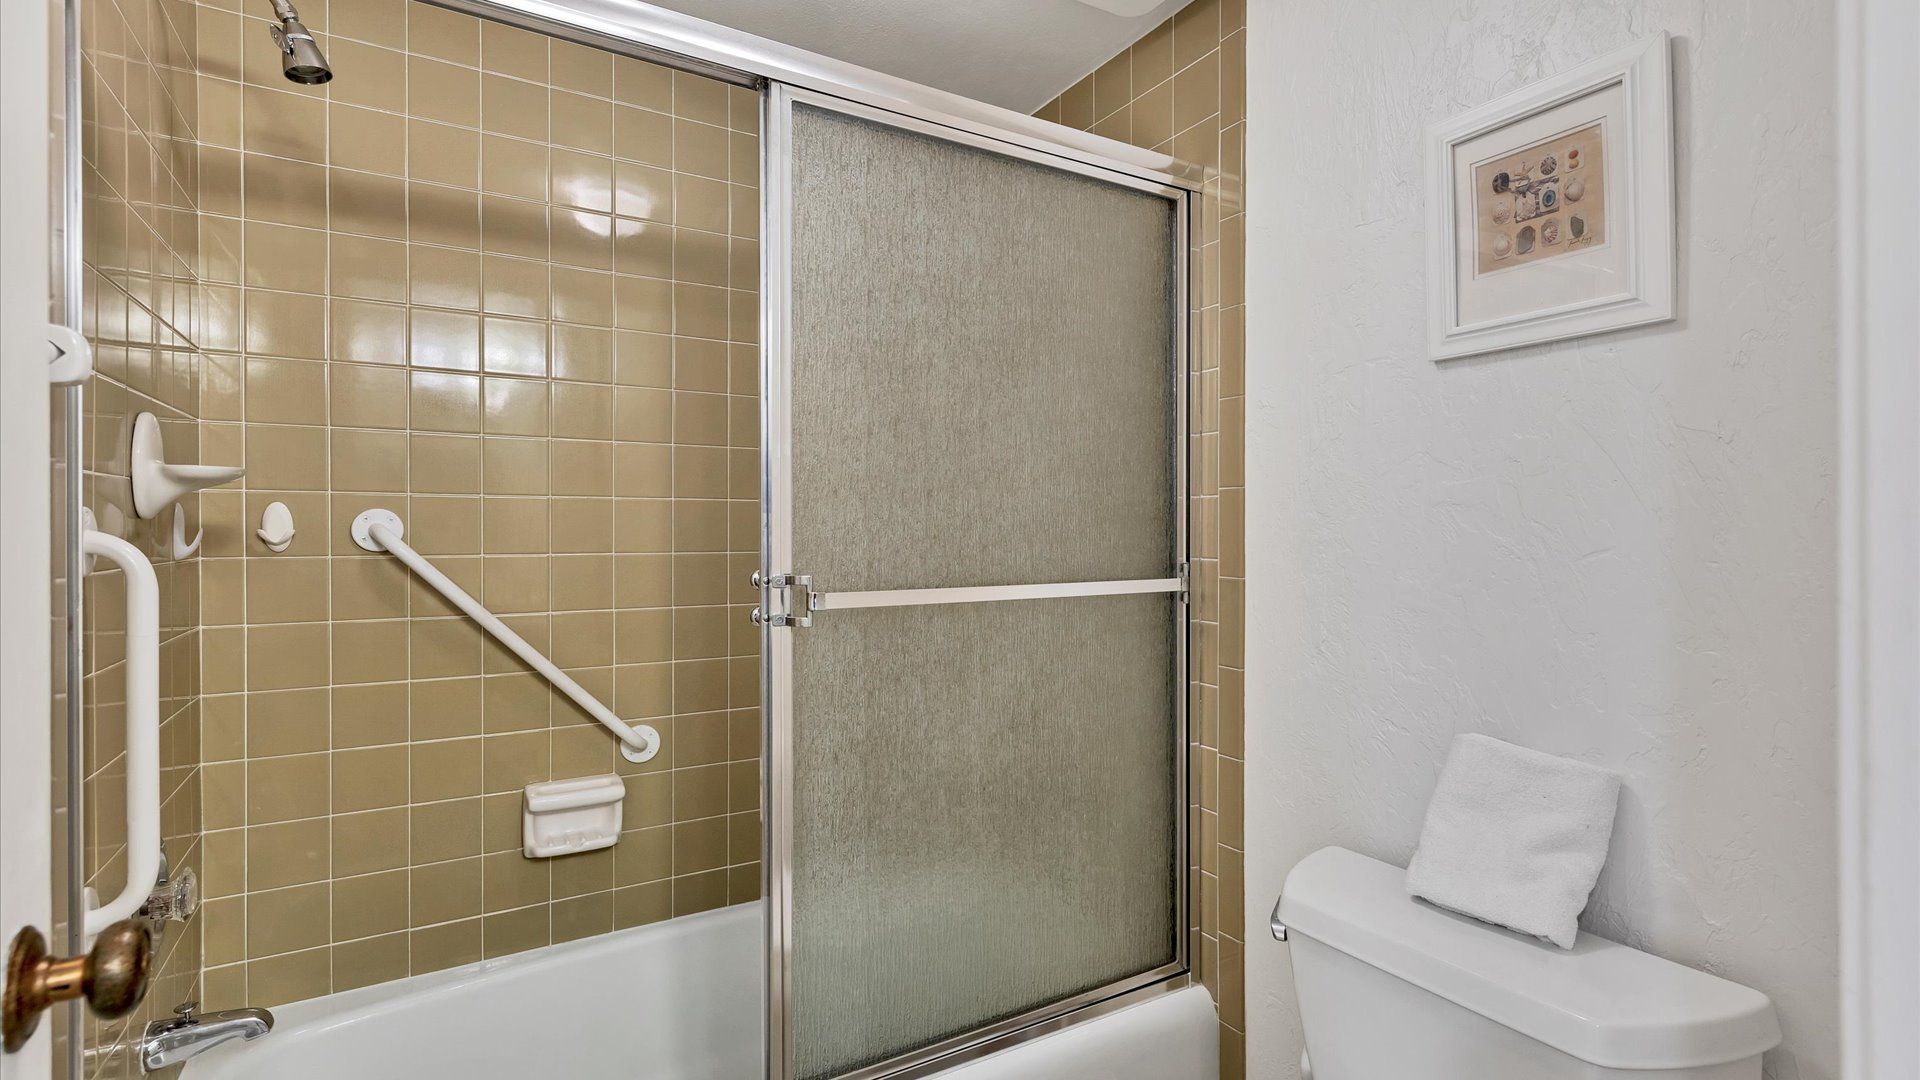 Master Bathroom (Angle)
Tub/Shower Combo